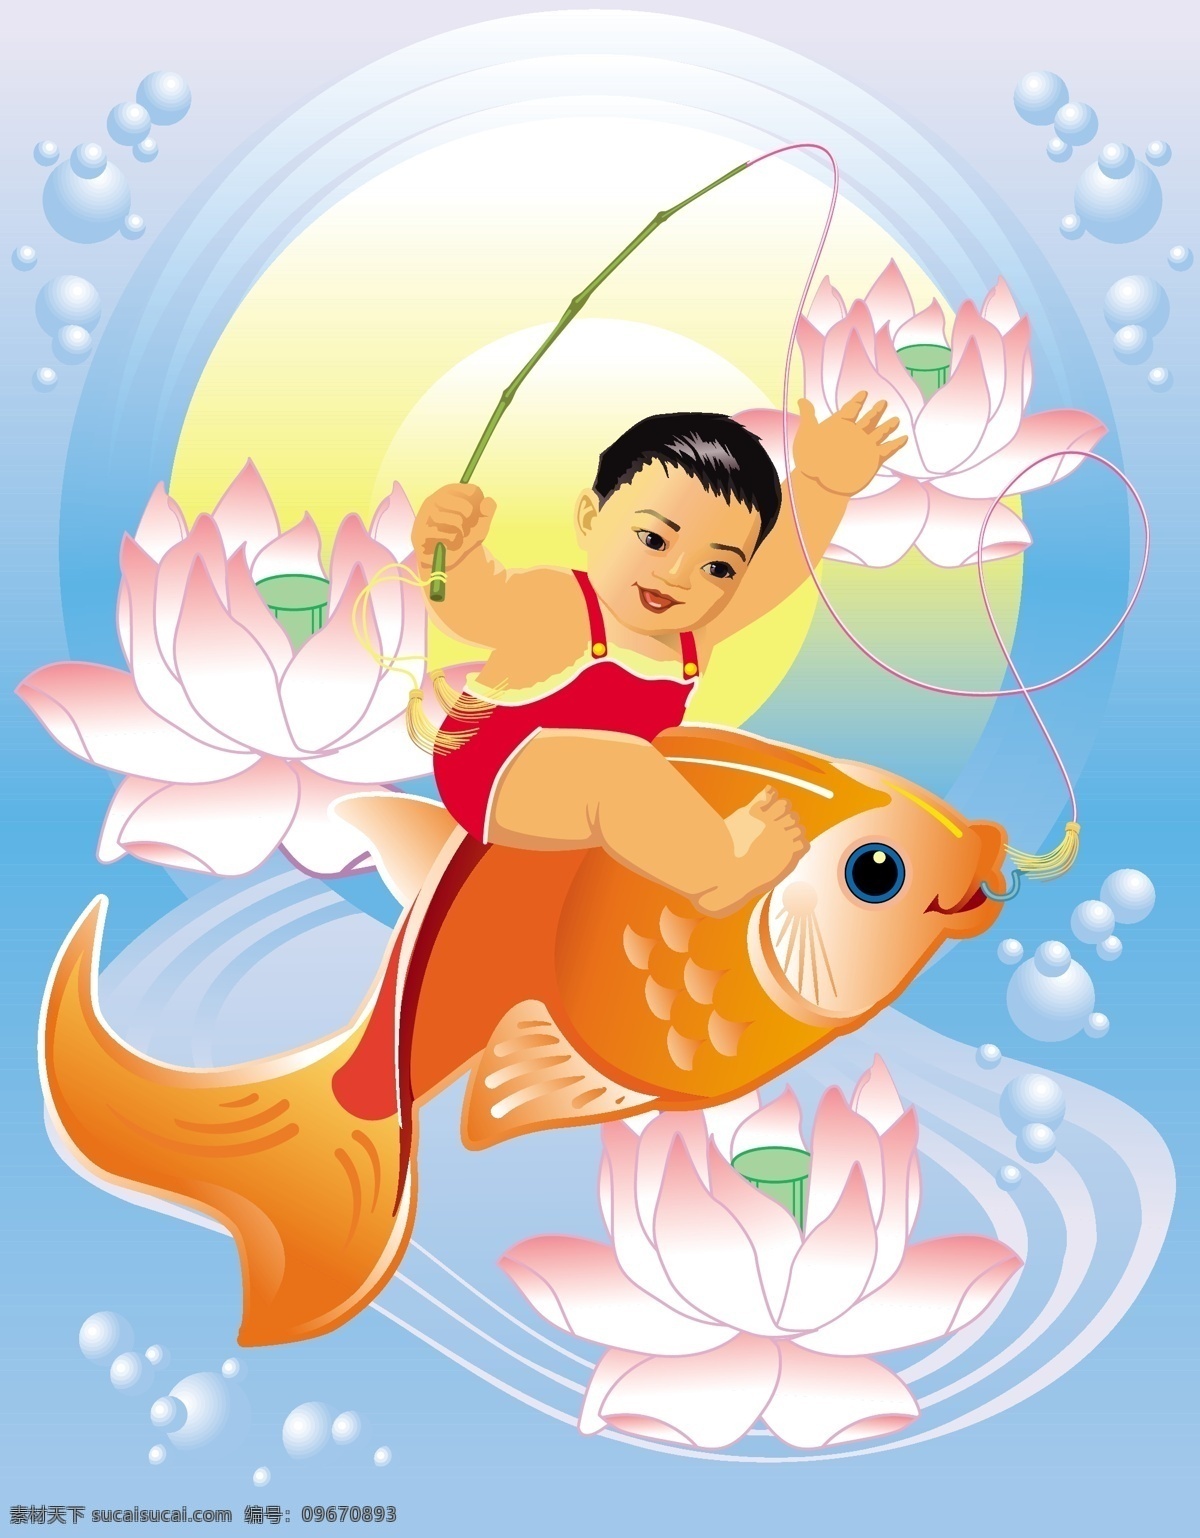 矢量 中国 风 吉祥 年画 传统 钓鱼 荷花 金鱼 矢量素材 小孩 鱼类 中国风 矢量图 其他矢量图